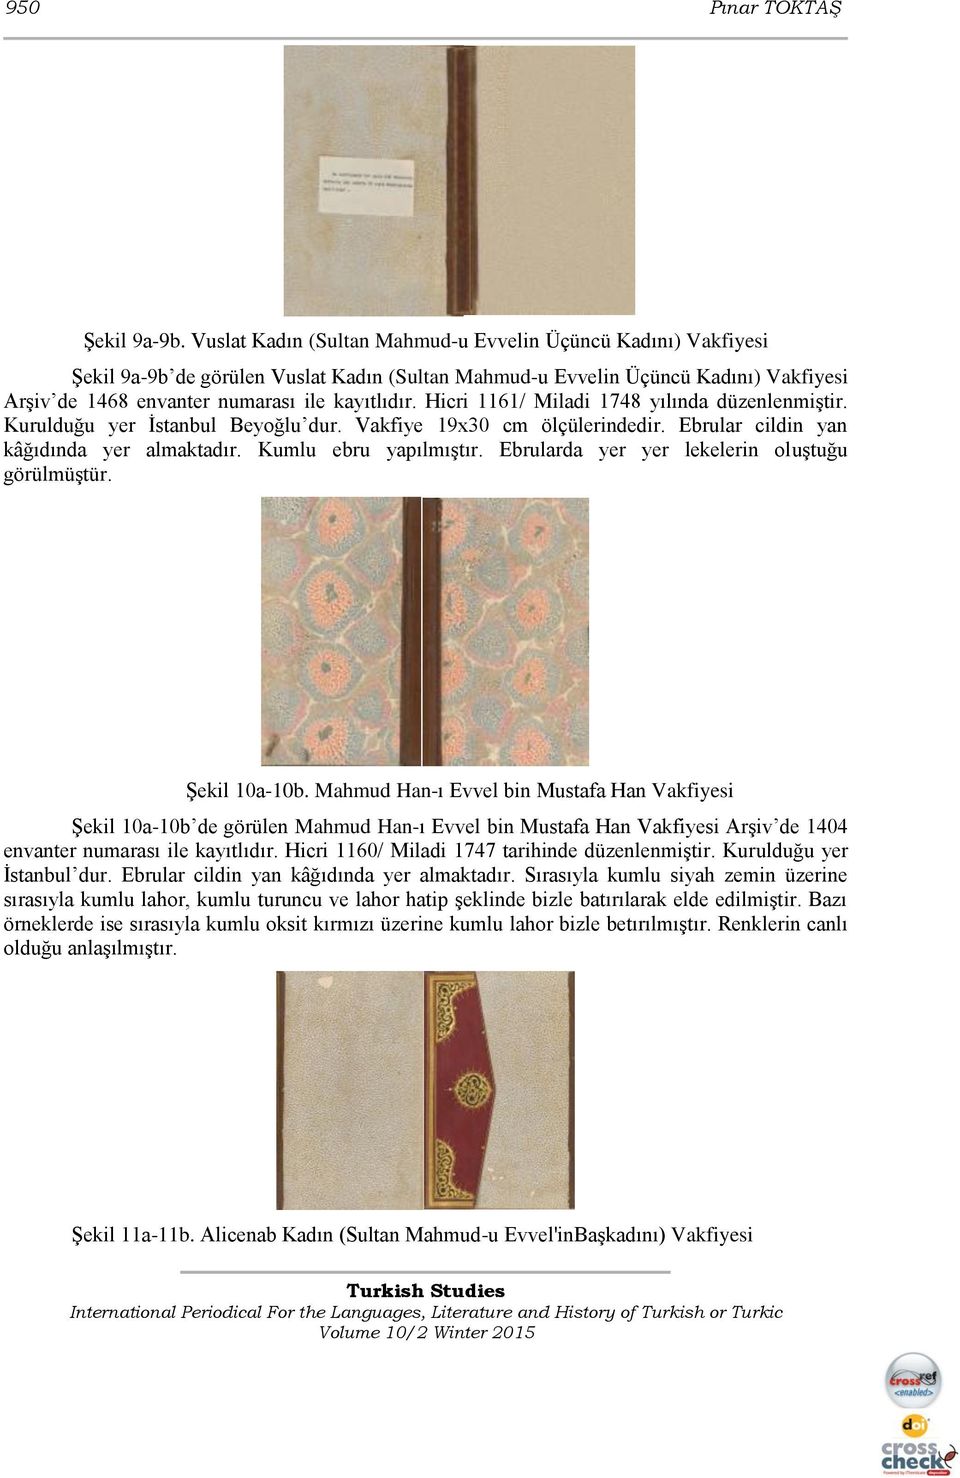 Hicri 1161/ Miladi 1748 yılında düzenlenmiştir. Kurulduğu yer İstanbul Beyoğlu dur. Vakfiye 19x30 cm ölçülerindedir. Ebrular cildin yan kâğıdında yer almaktadır. Kumlu ebru yapılmıştır.